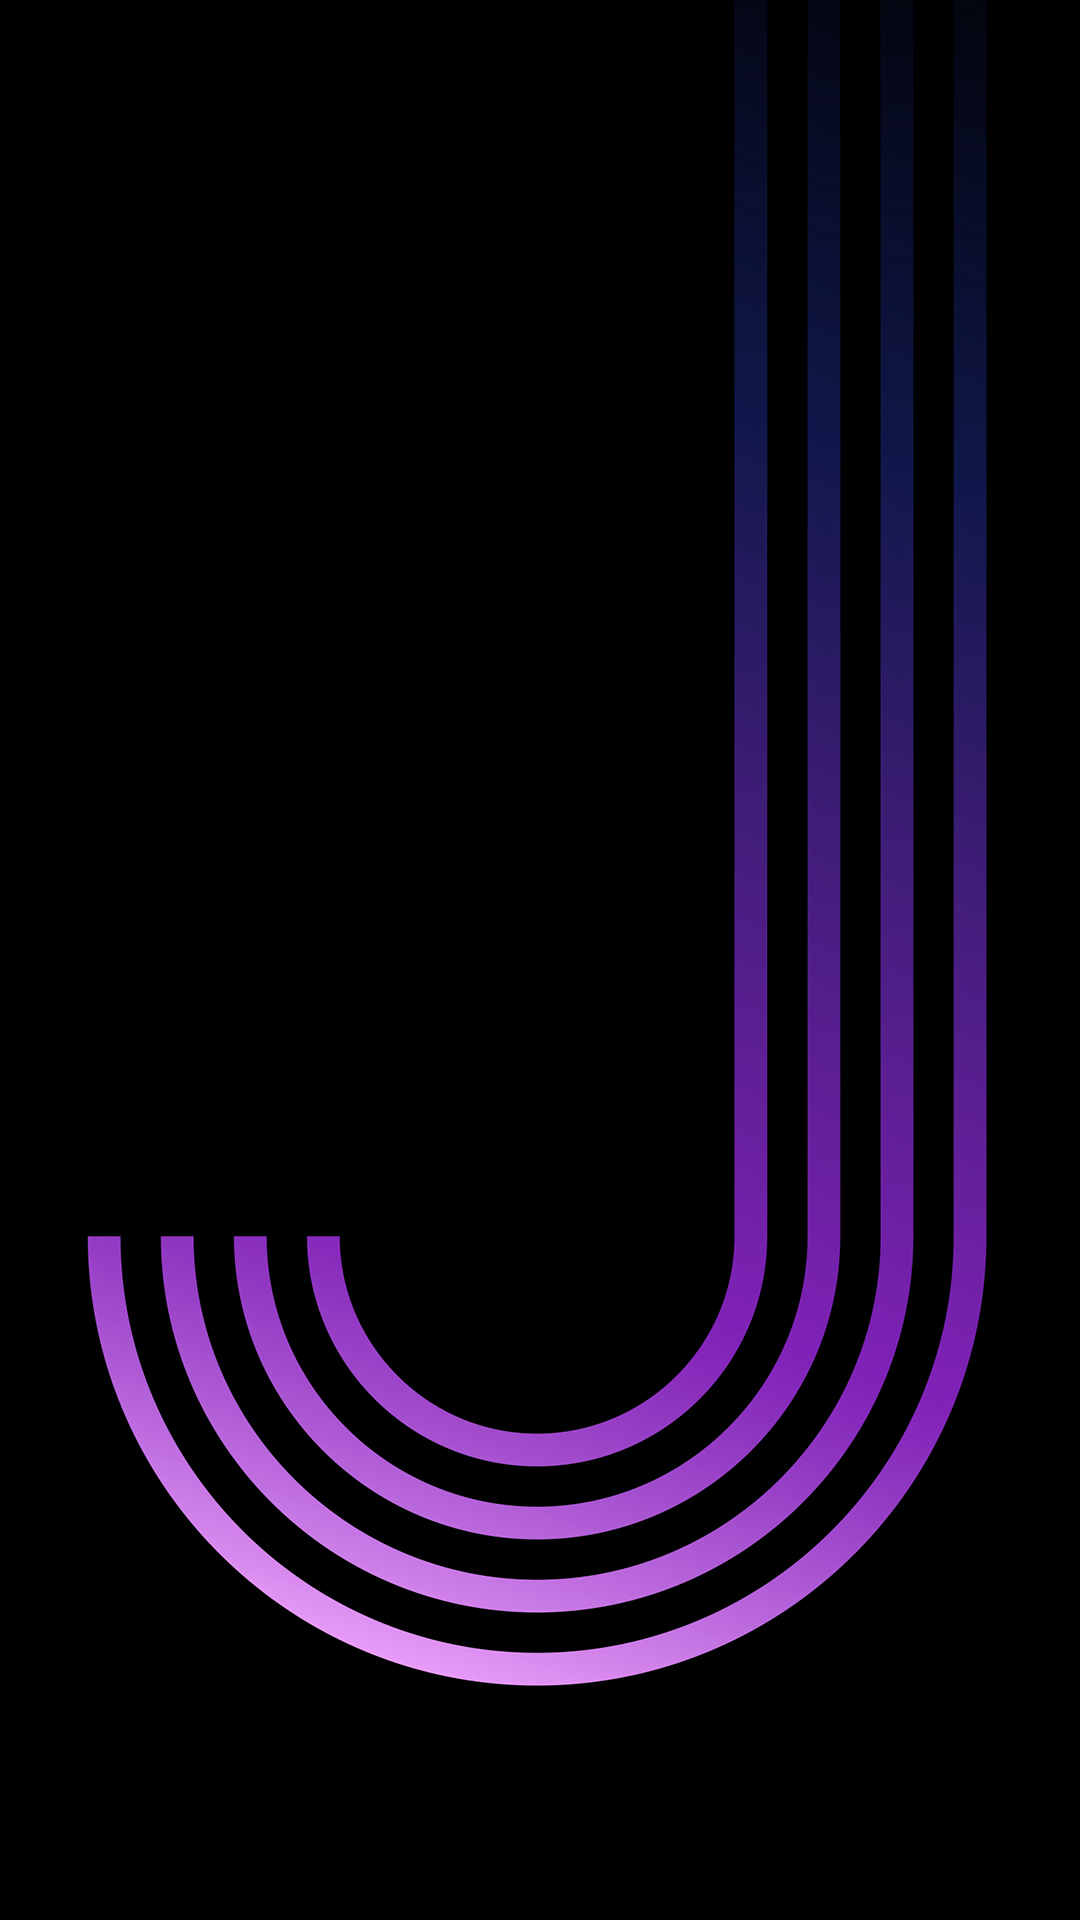 samsung galaxy j5 wallpaper,violett,lila,schwarz,text,schriftart